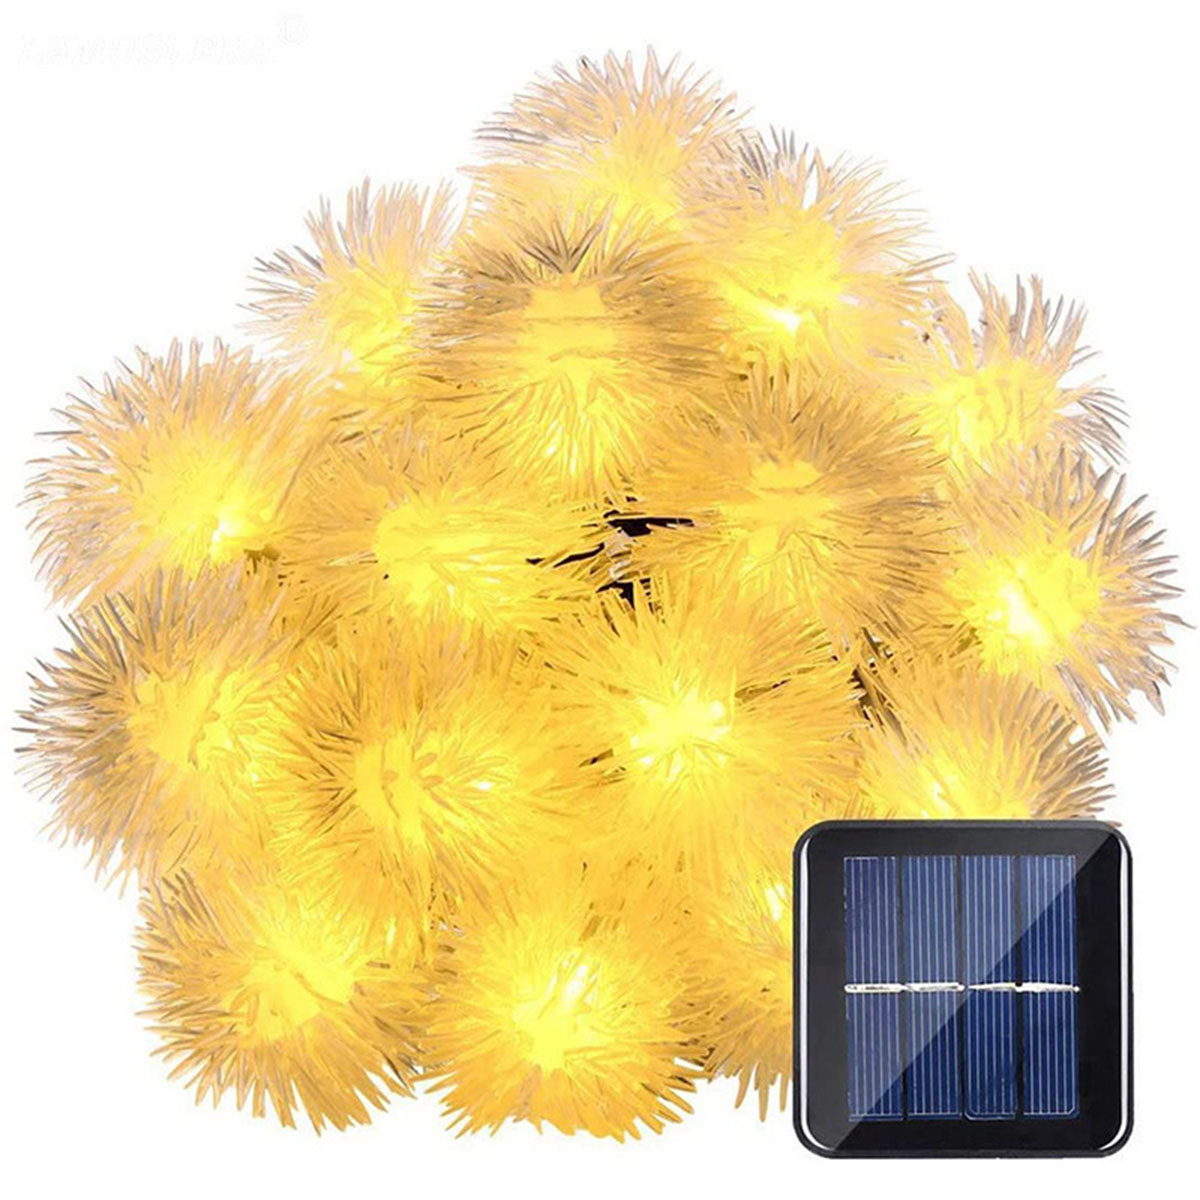 Warmweiß Funktionen Leuchten Solarleuchte, Meter 8 7 warmweiß, Haarballen-Lampe, Solar-Lichterketten, 50 Haarballenlampe LAMON